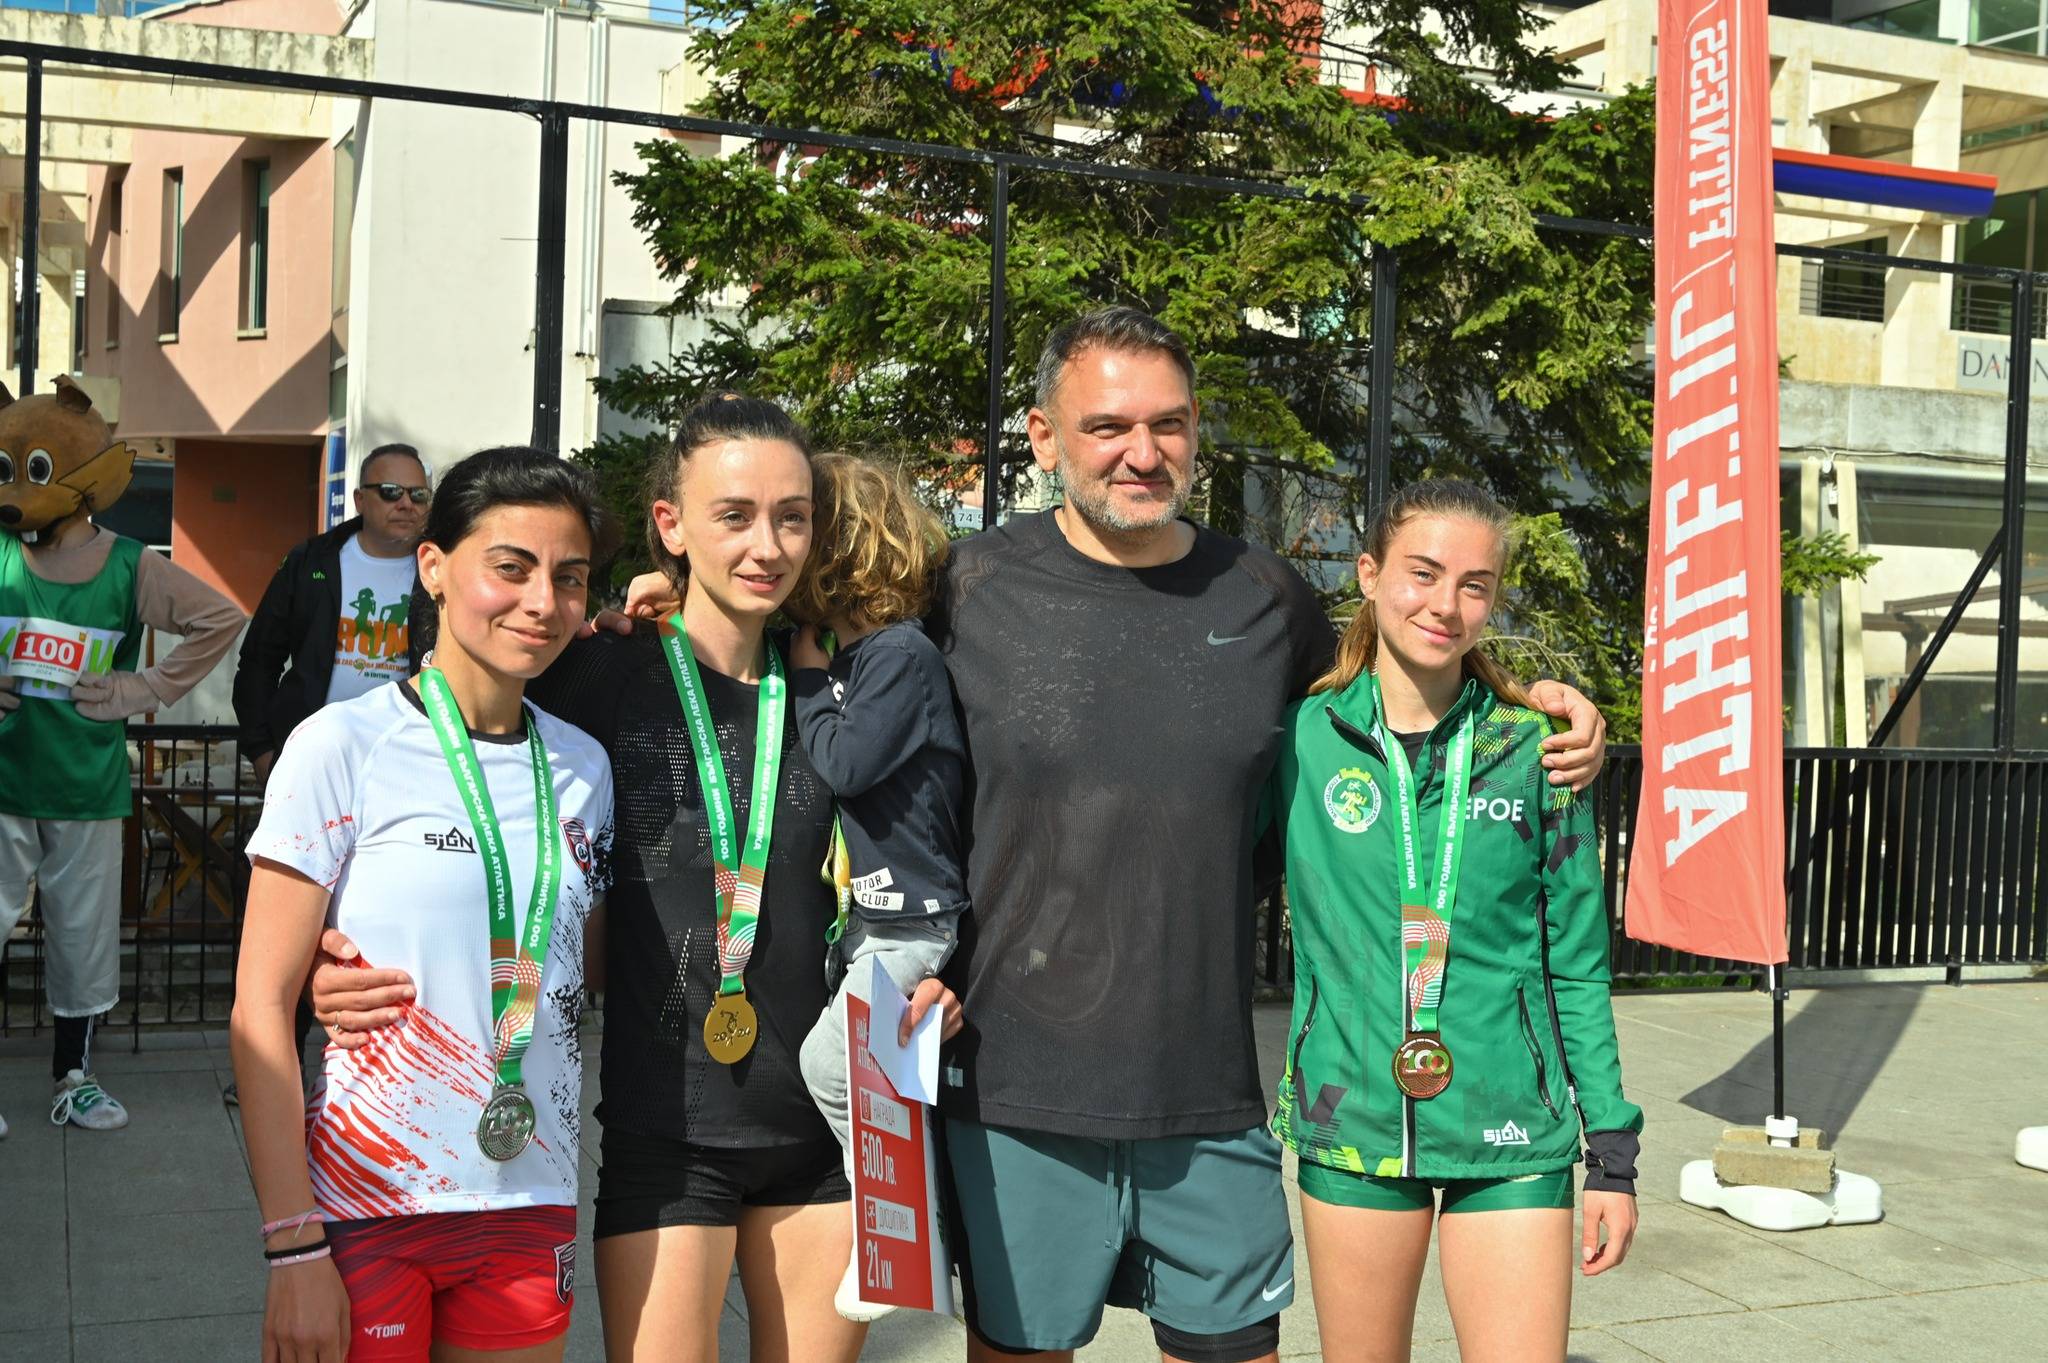  Милица Мирчева стана шампионка на България при дамите на Националния шампионат по полумаратон, който се организира в границите на деветото издание на Маратон 